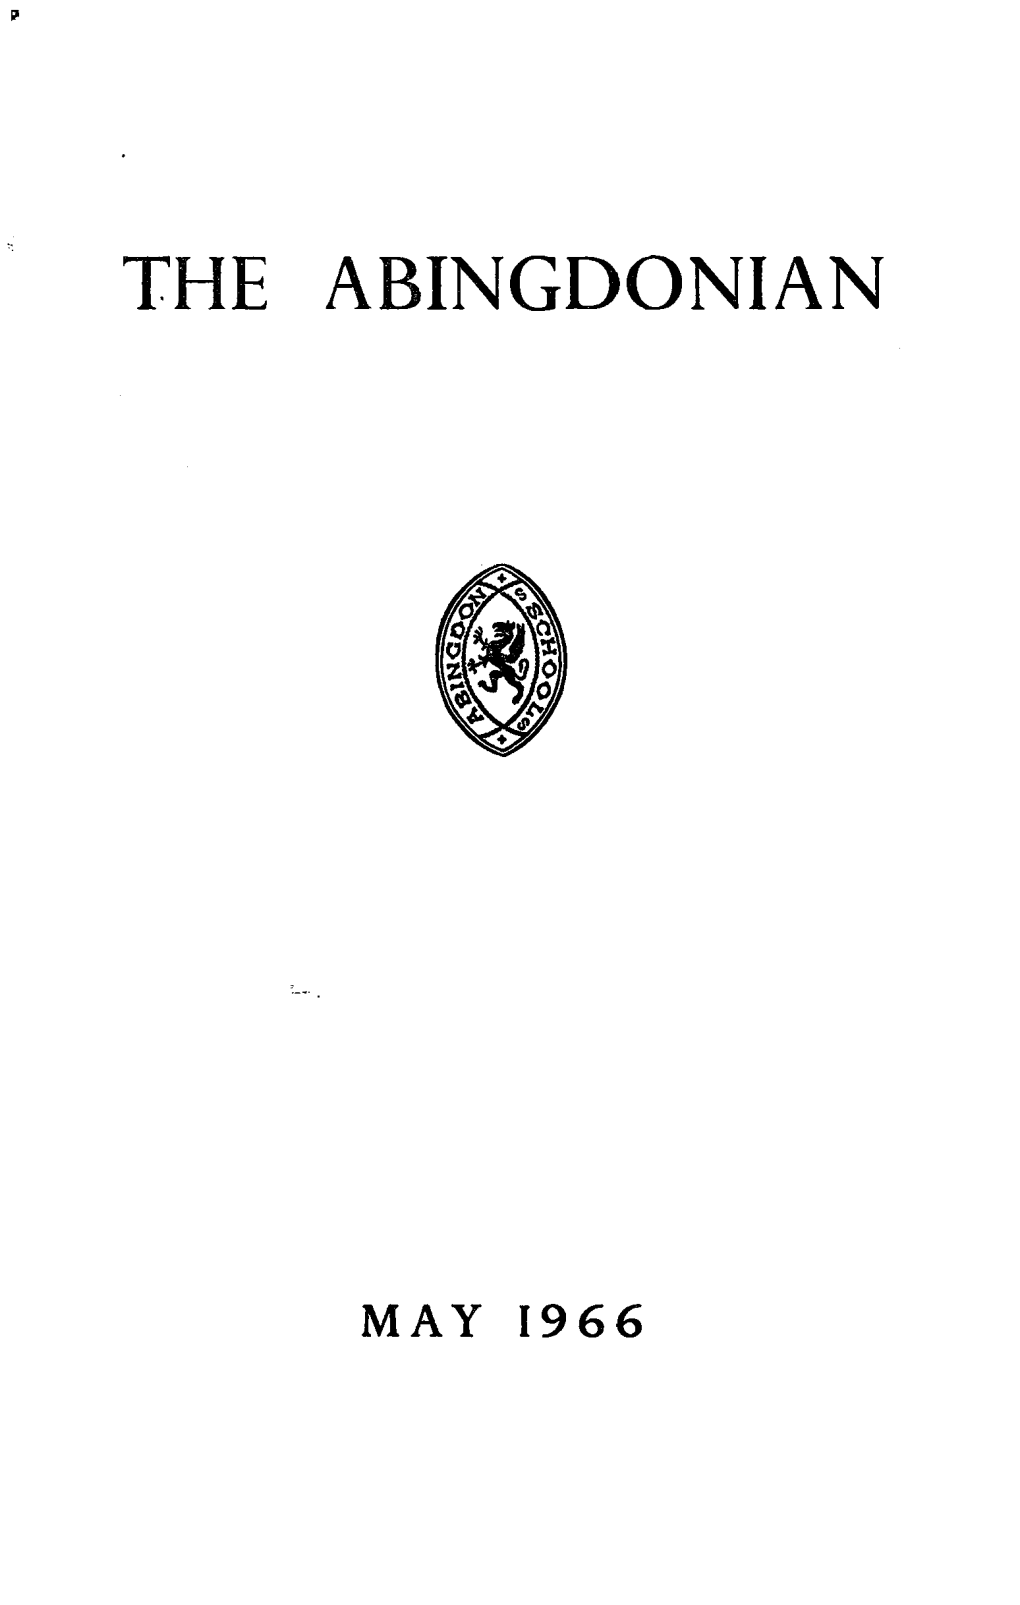 The Abingdonian